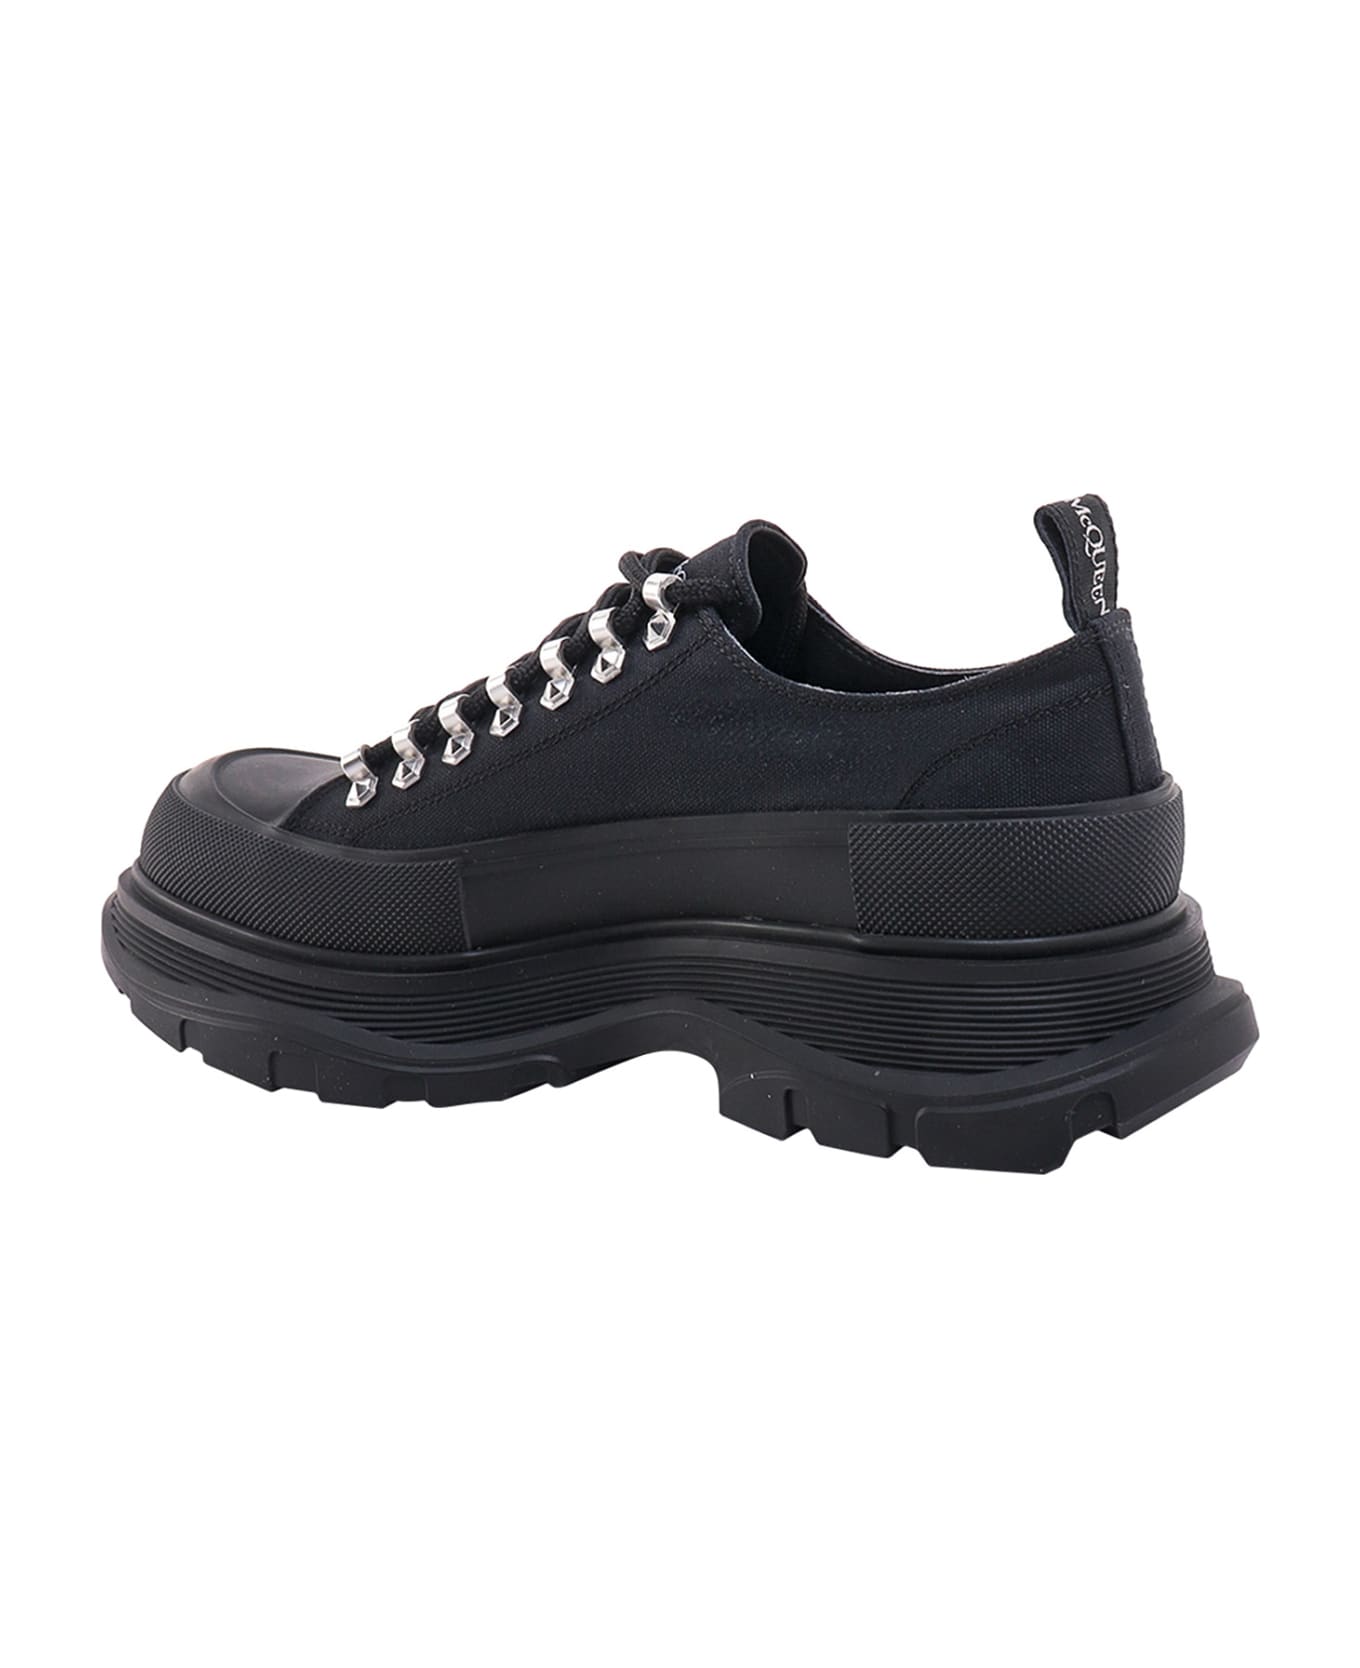 Alexander McQueen Tread Slick Sneakers - Black スニーカー